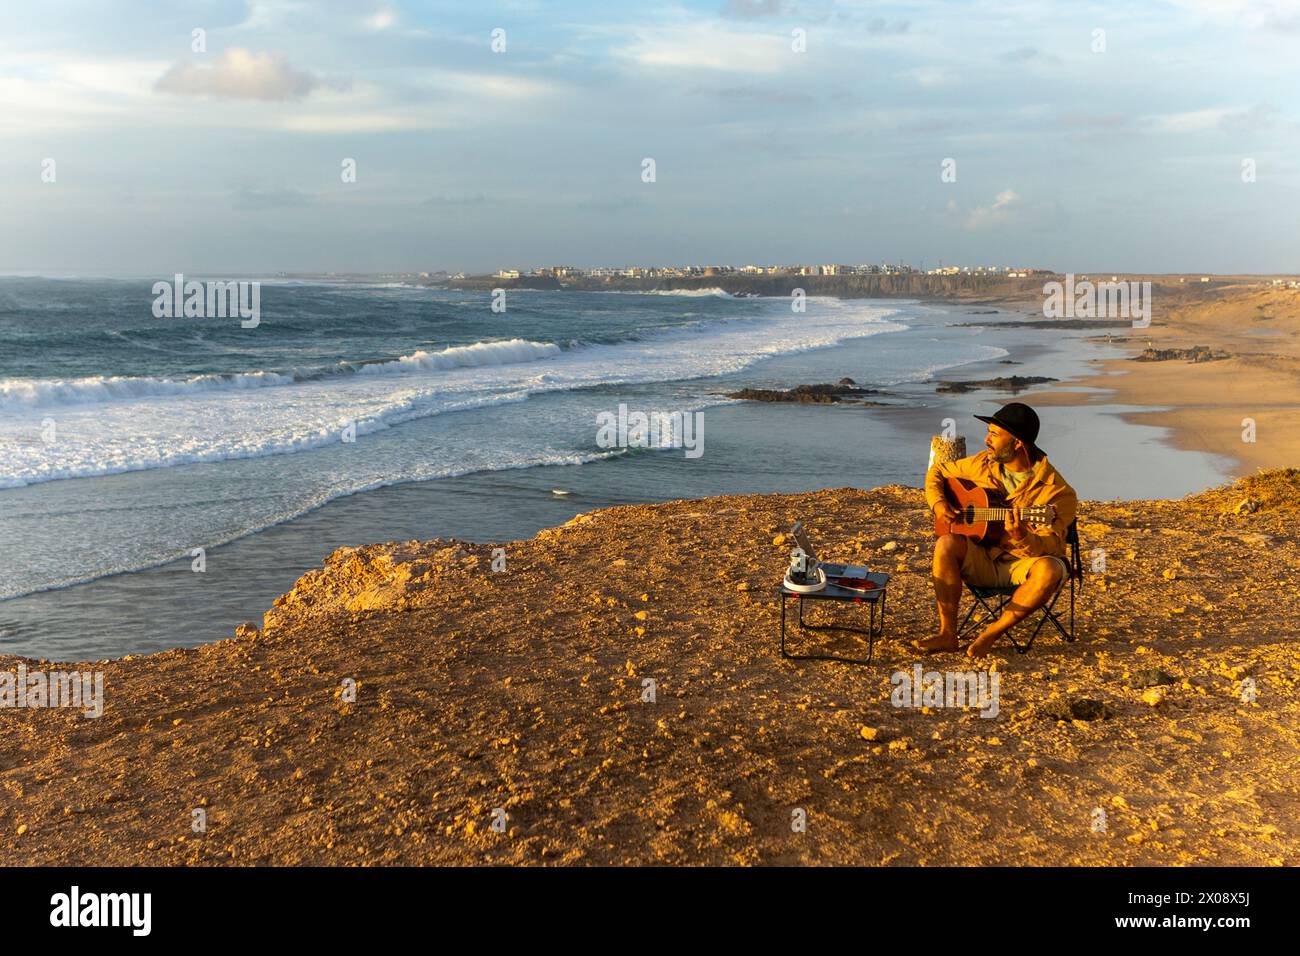 Un músico masculino, inspirado en las puestas de sol costeras, es visto componiendo en su guitarra junto al océano, viviendo un estilo de vida nómada fuera de su autocaravana. Foto de stock